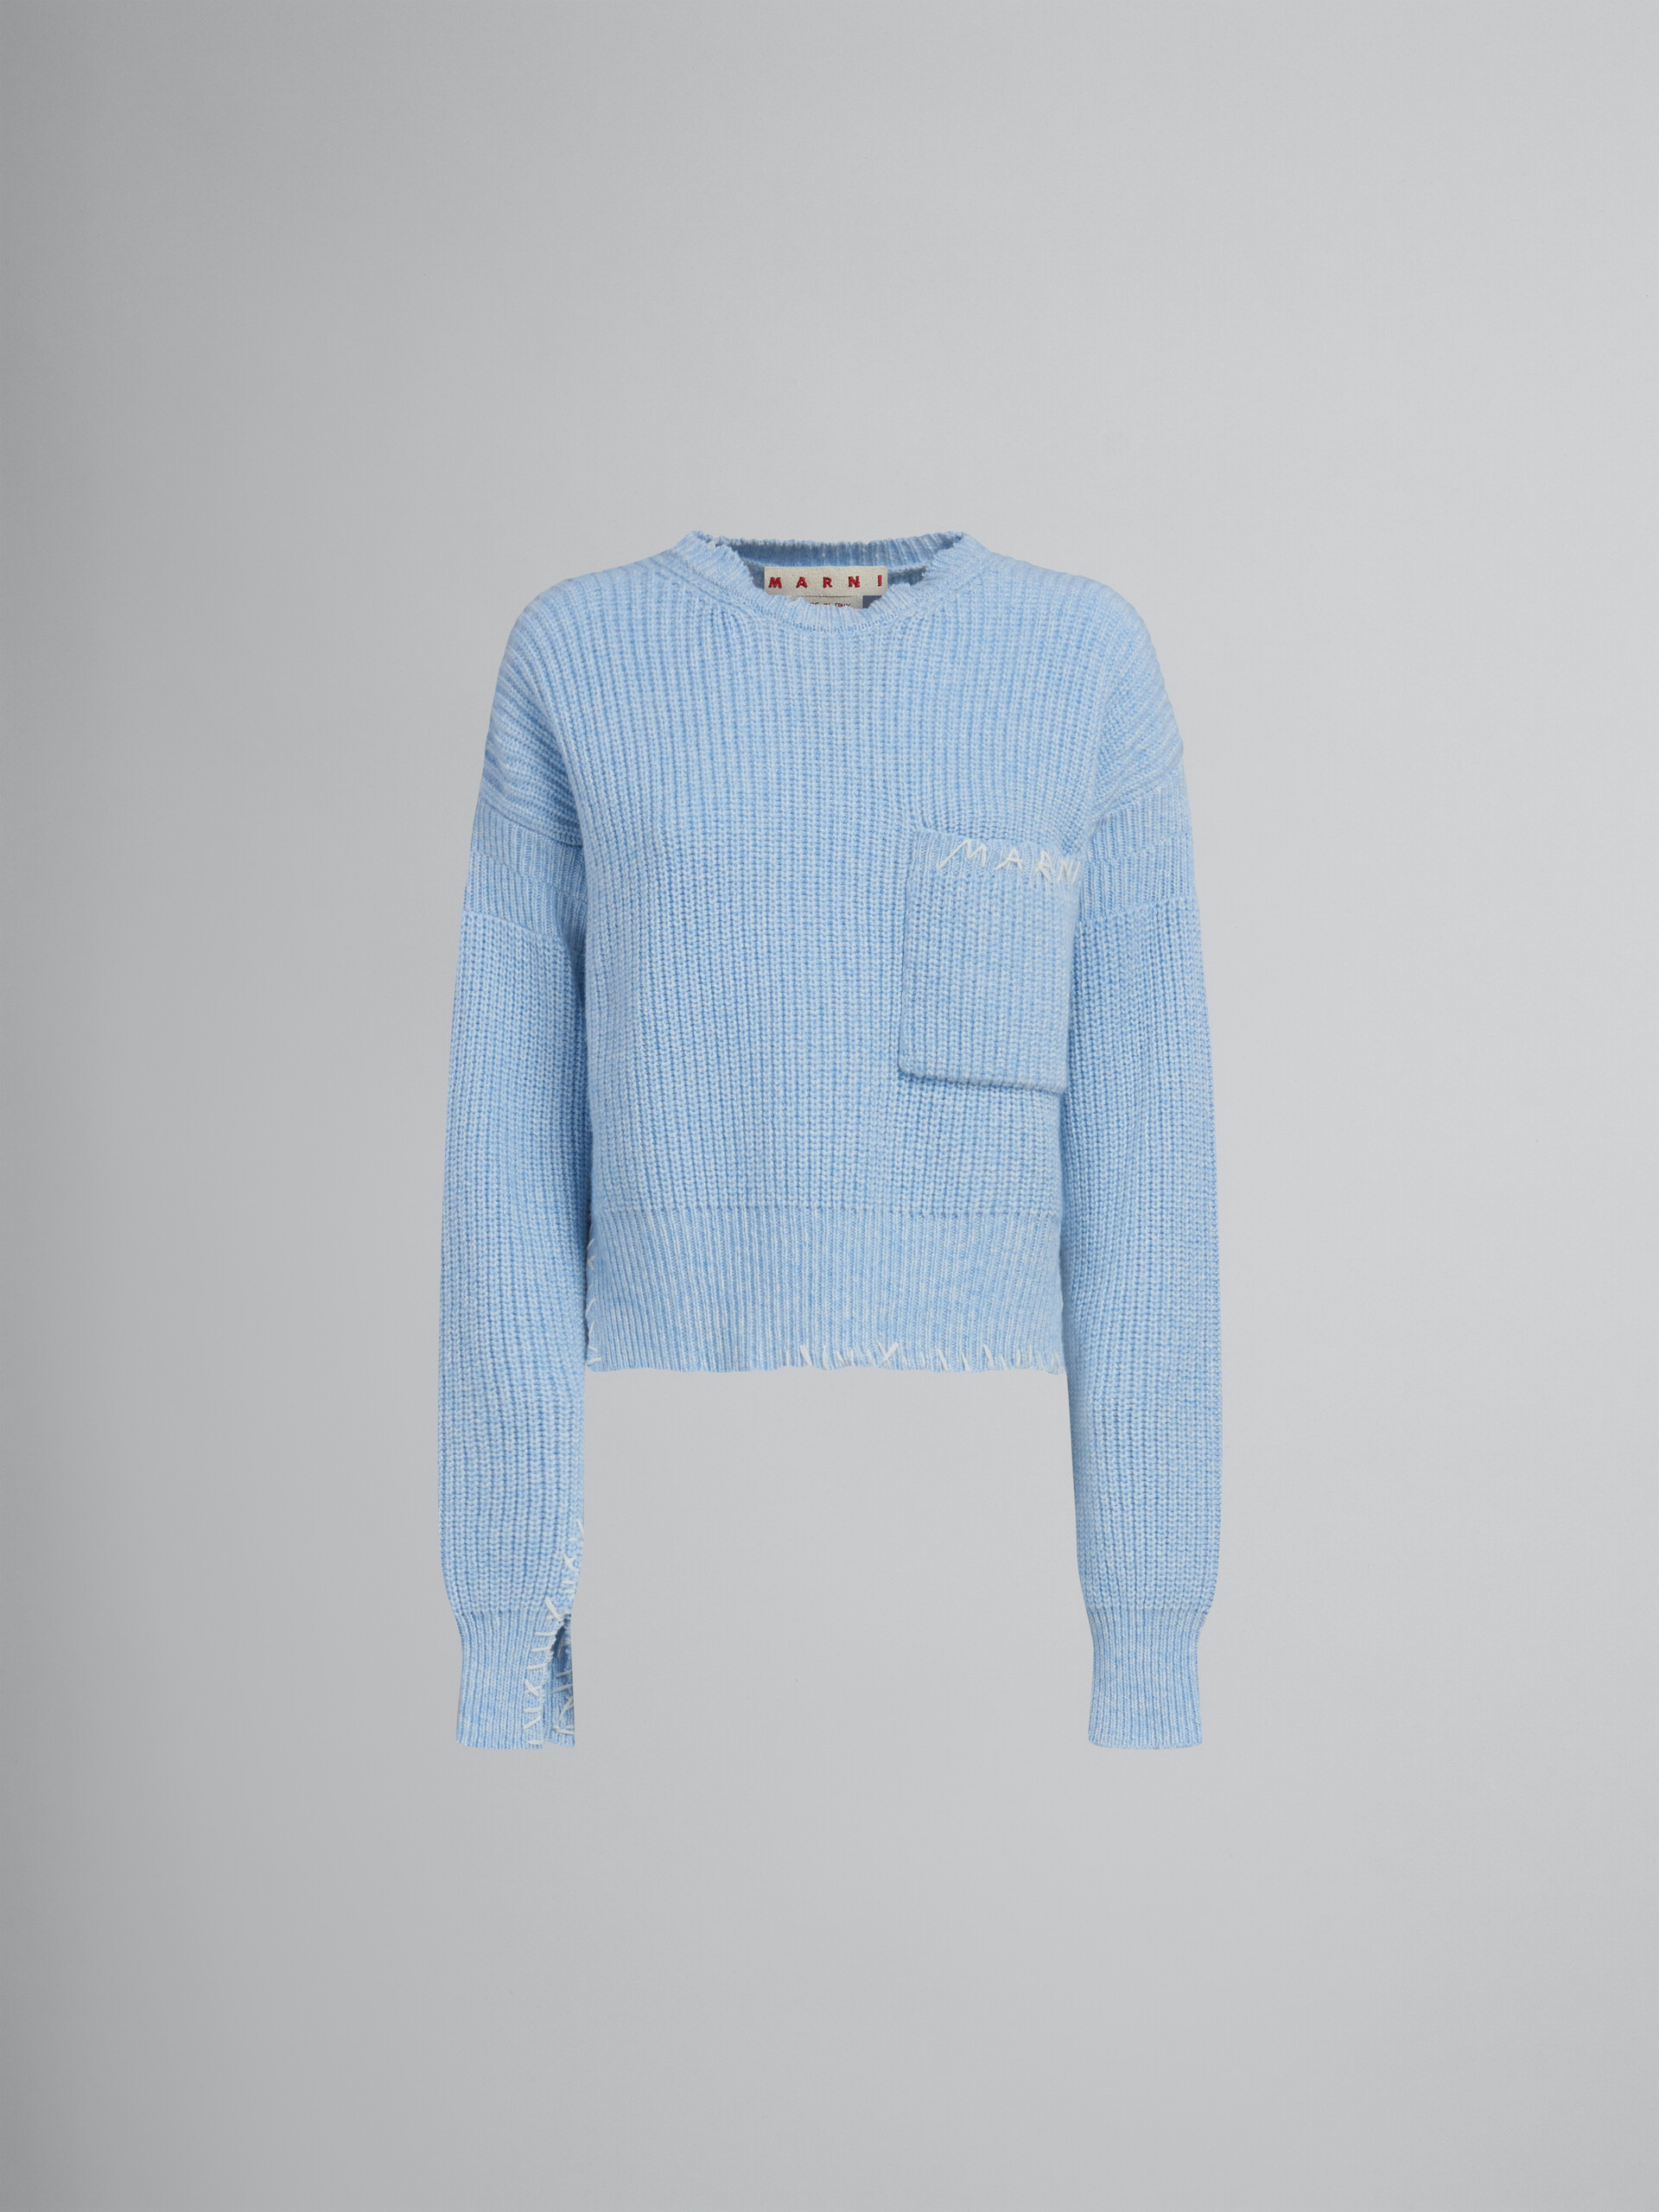 Maglione mouliné blu con impunture a contrasto - Pullover - Image 1